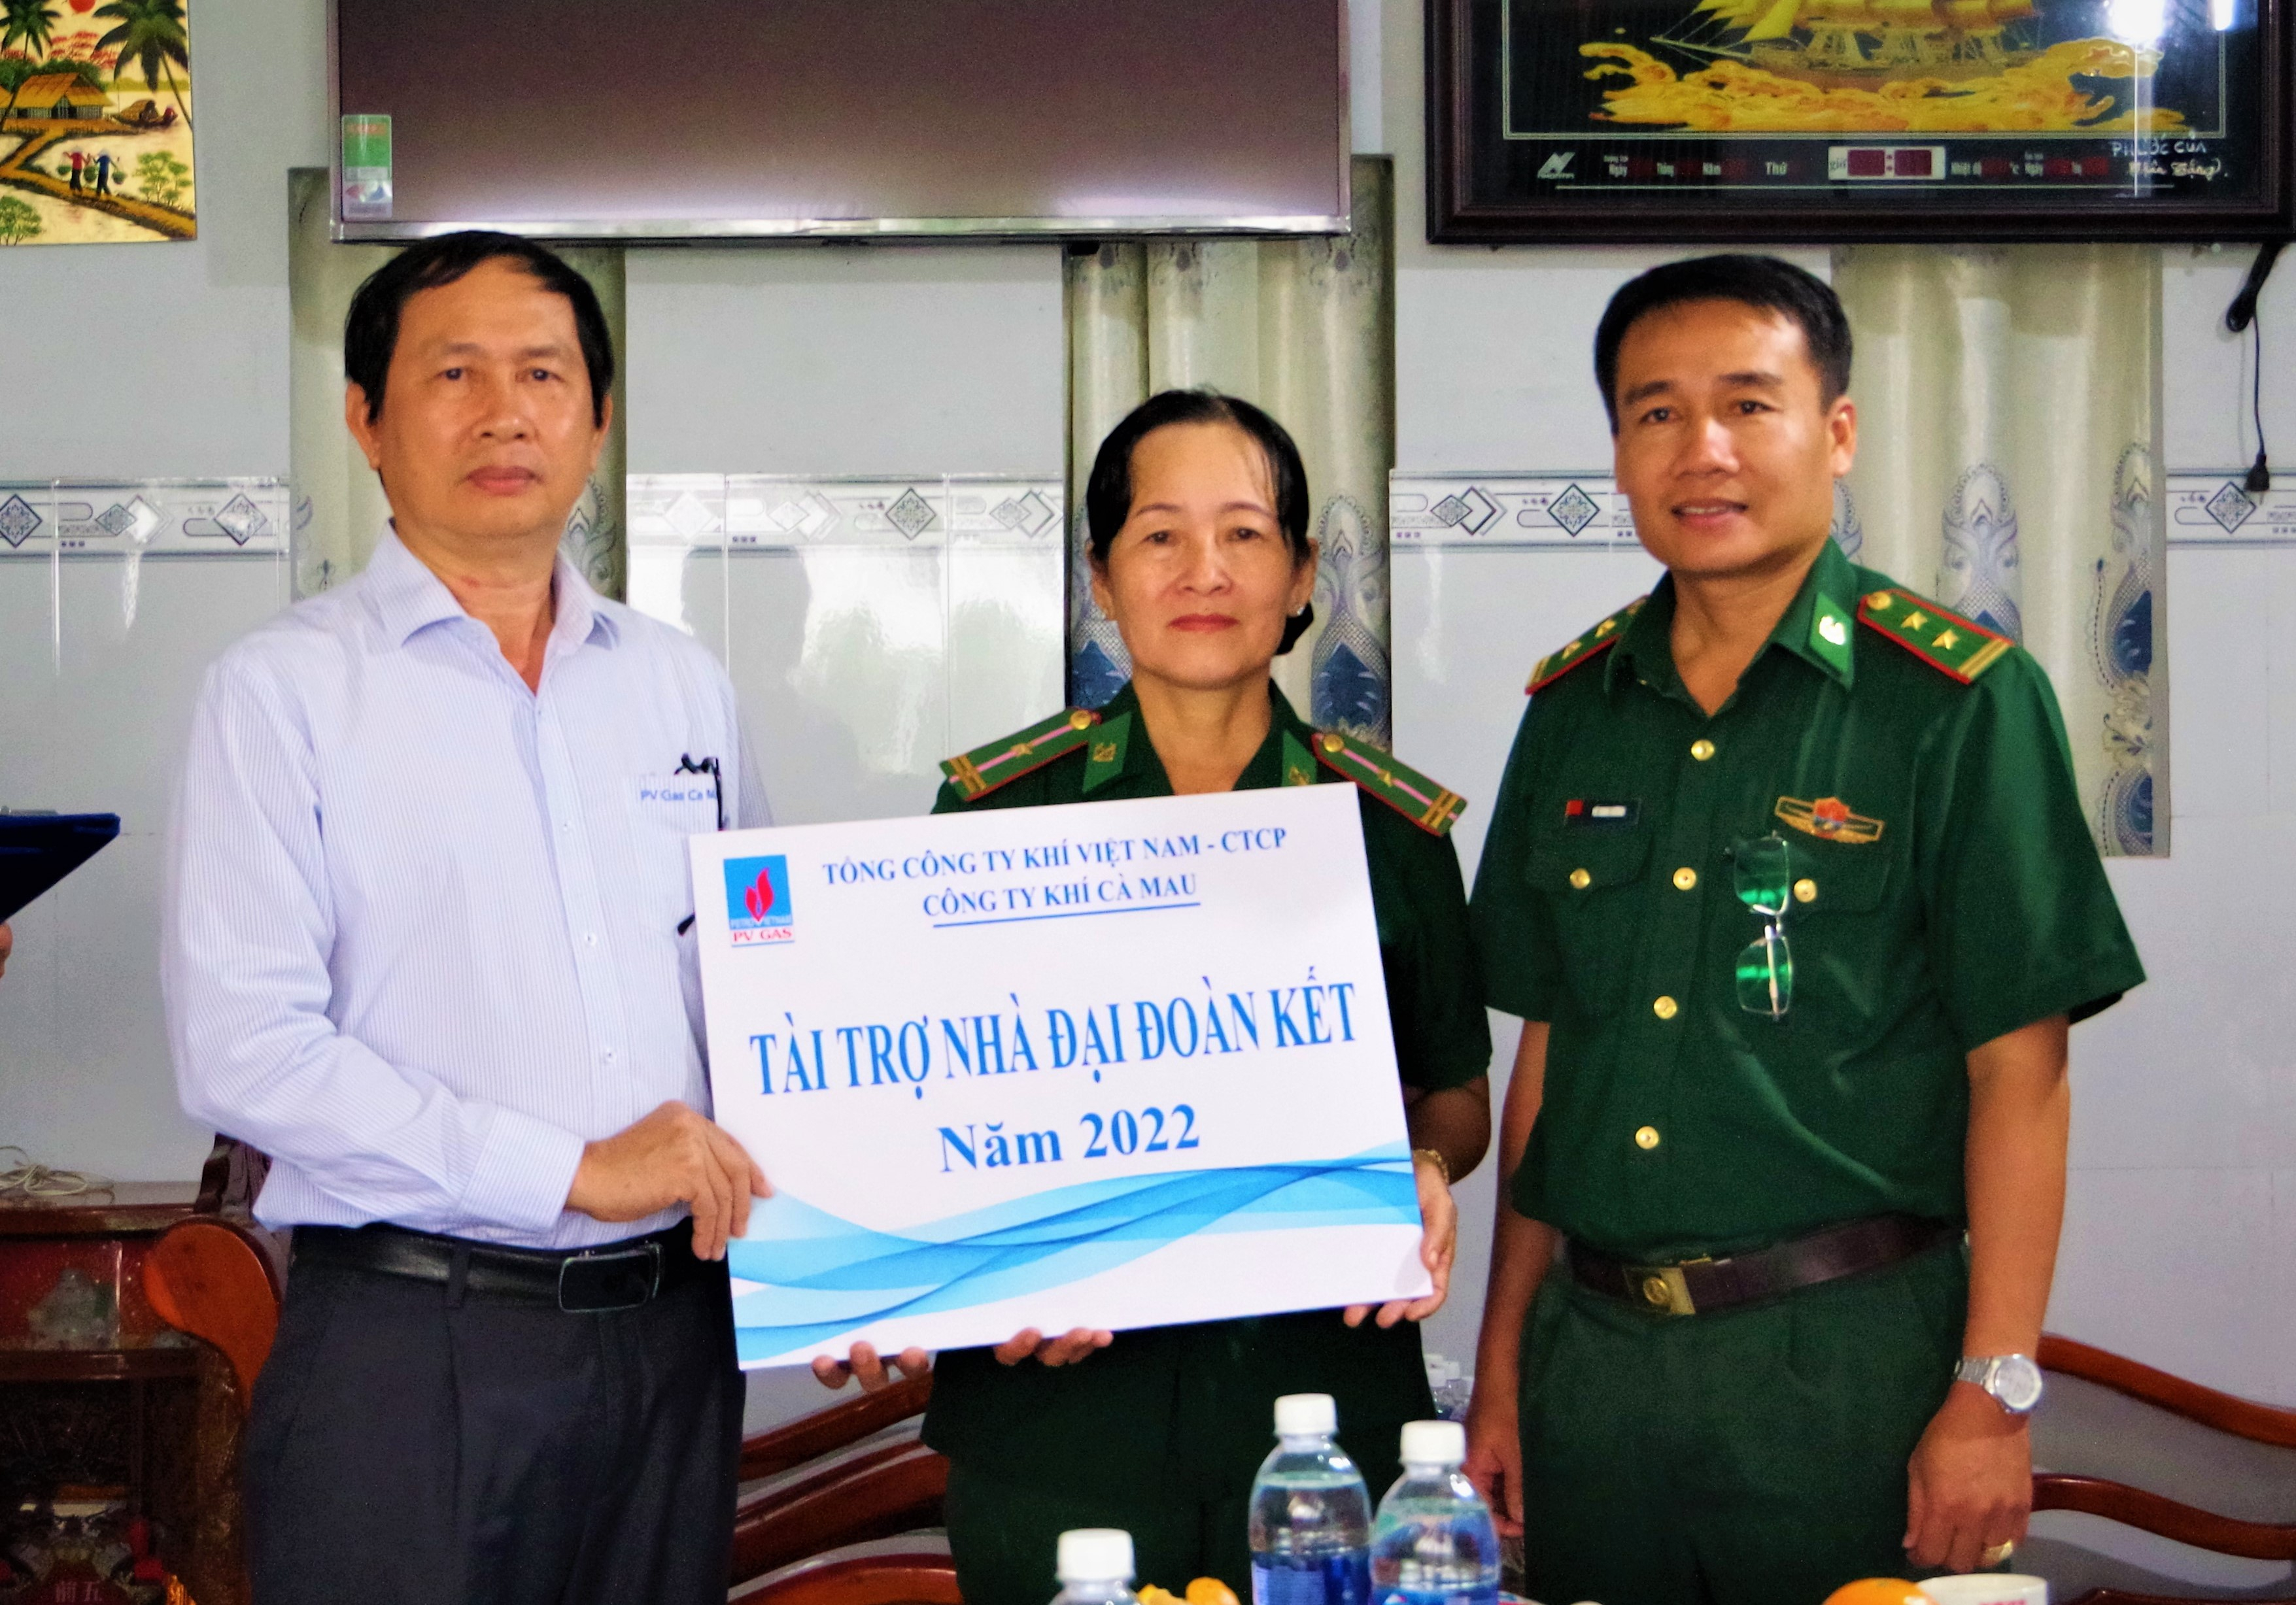 Trung tá Võ Minh Đương- Phó Chủ nhiệm Chính trị BĐBP tỉnh và Đại diện Công ty khí cà Mau trao Quyết định tặng nhà cho gia đình đồng chí Hồng